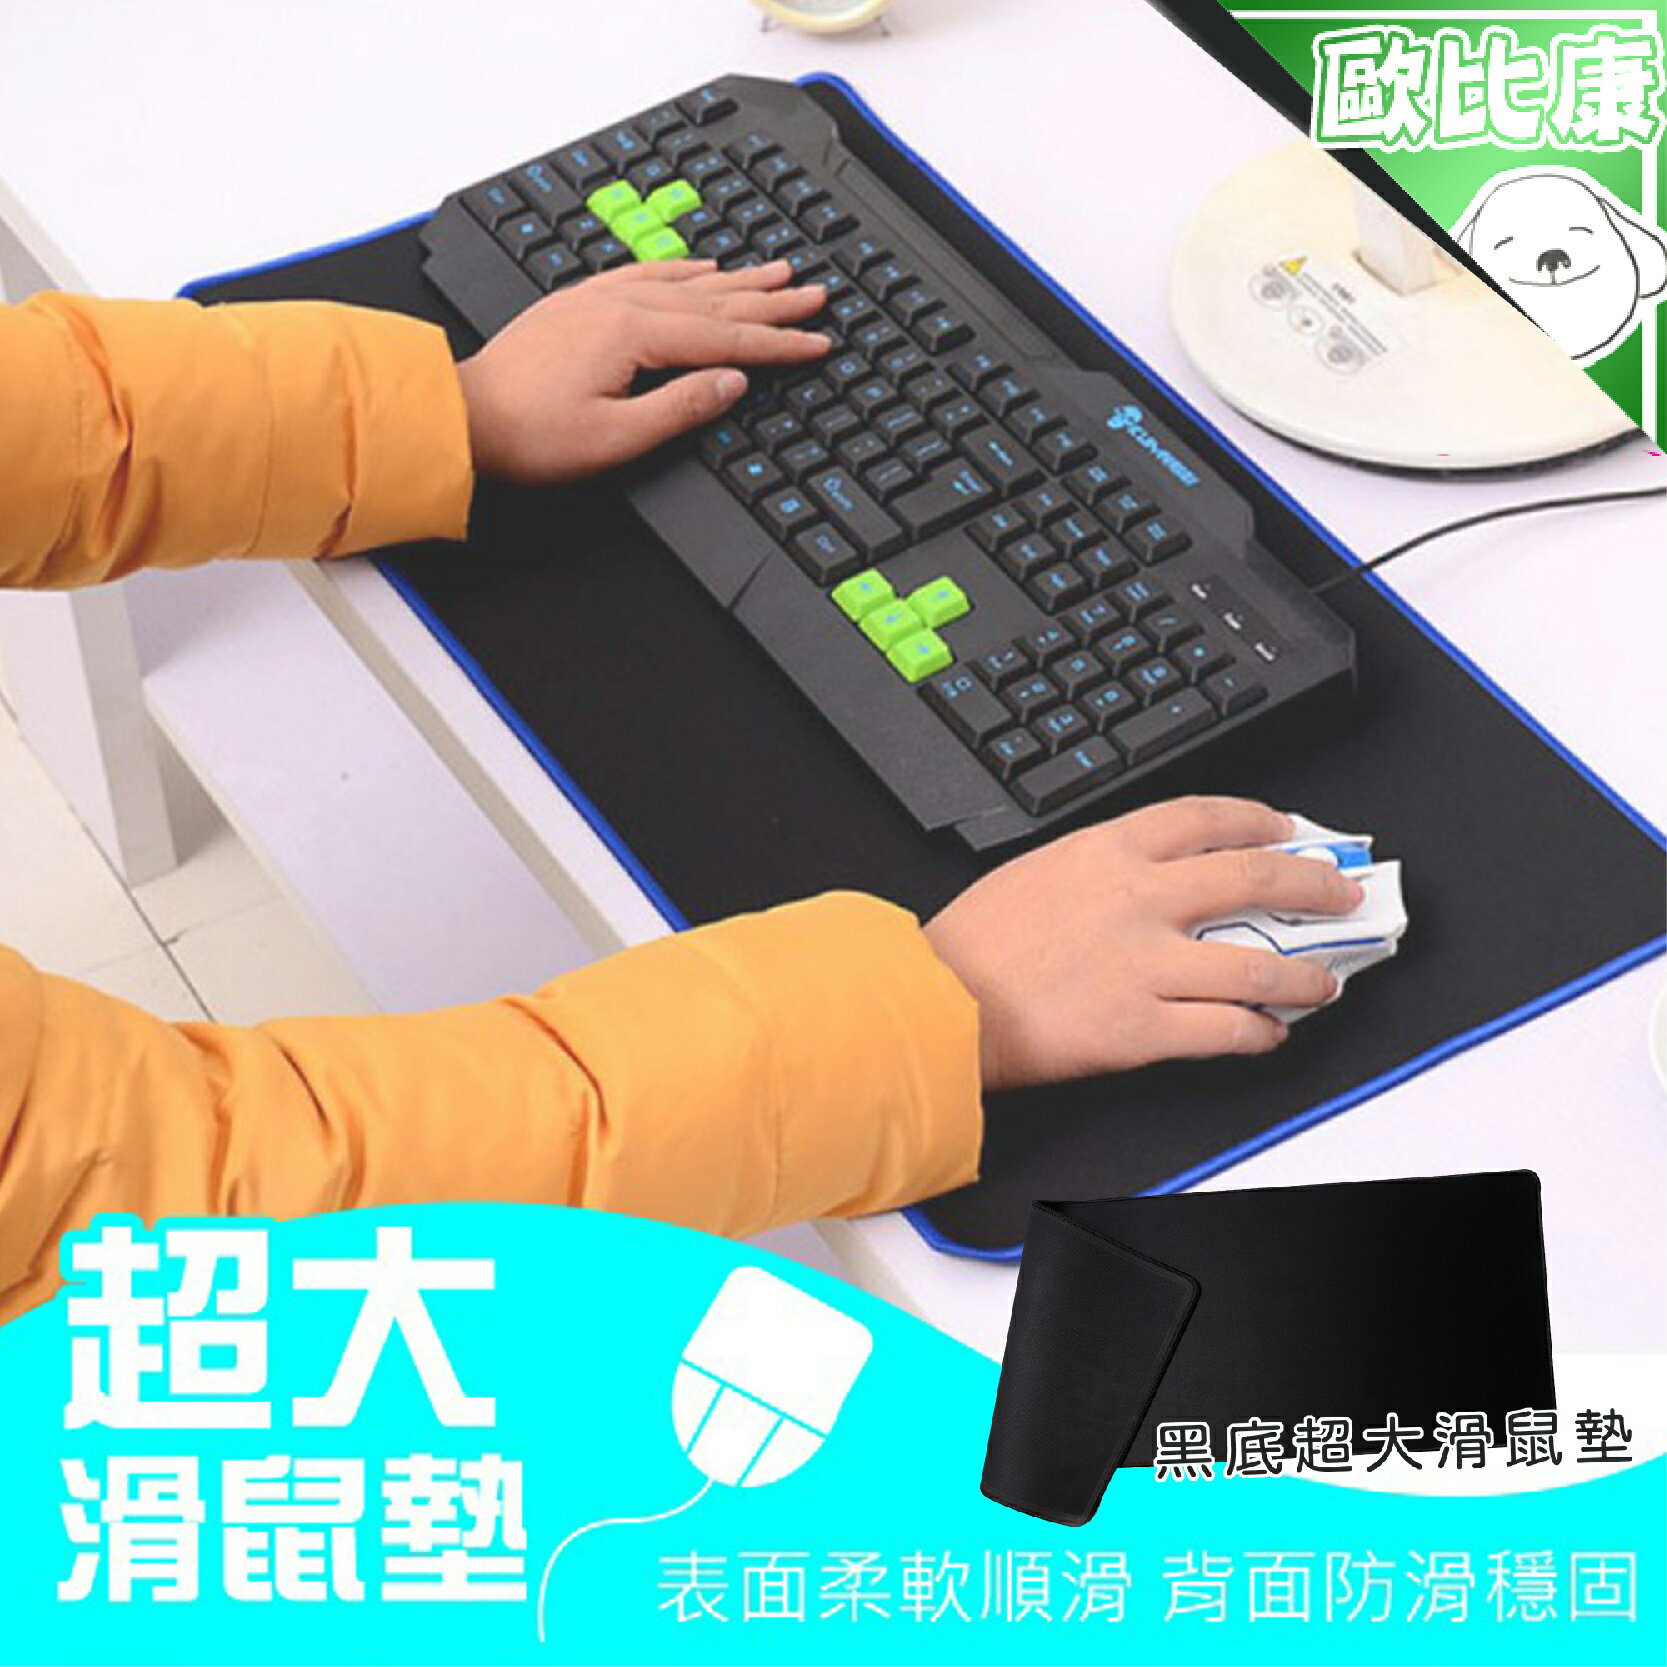 【歐比康】 超大遊戲滑鼠墊 80X40 60X30CM 鍵盤墊 精密鎖邊桌墊 滑鼠墊 桌墊 辦公桌墊 電競滑鼠墊 學生桌墊